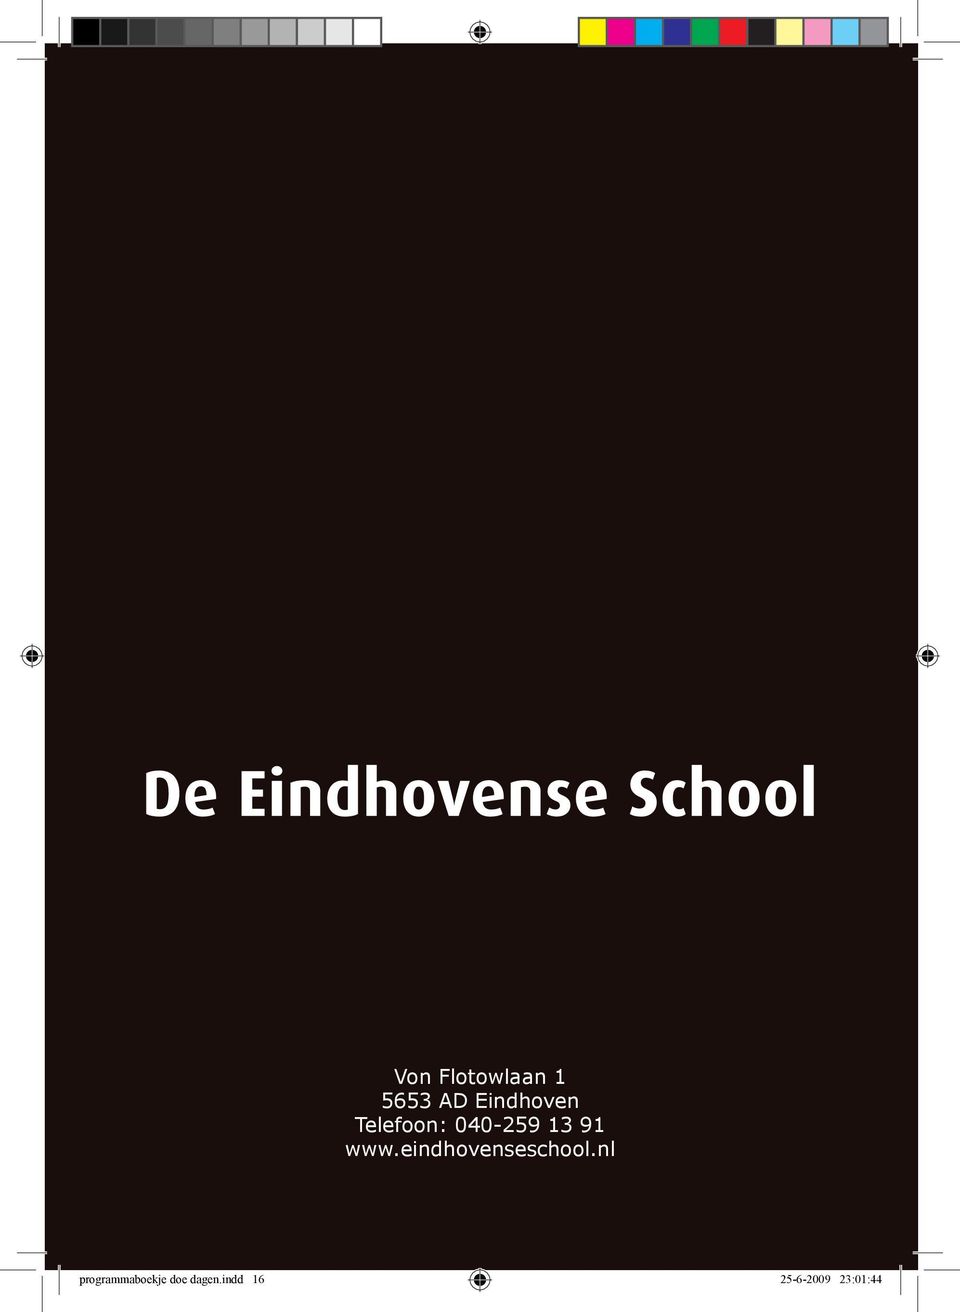 www.eindhovenseschool.